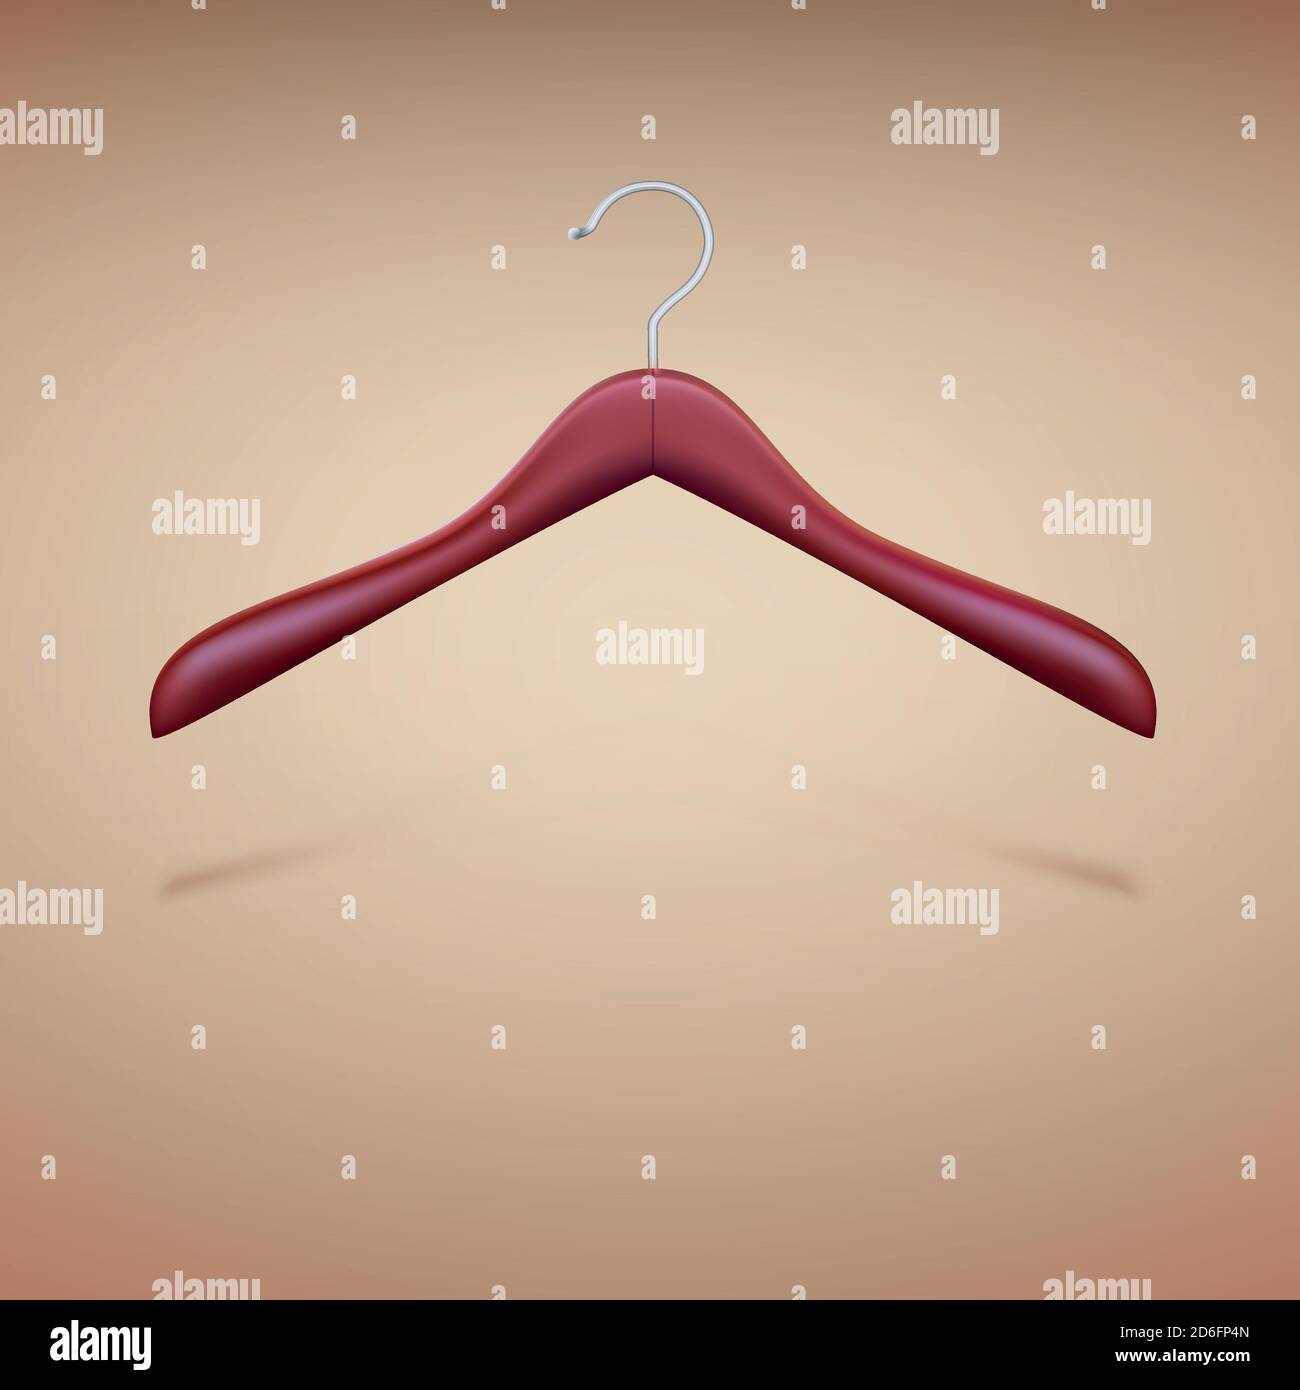 Un juego de 2 perchas para ropa. ilustración vectorial detallada.